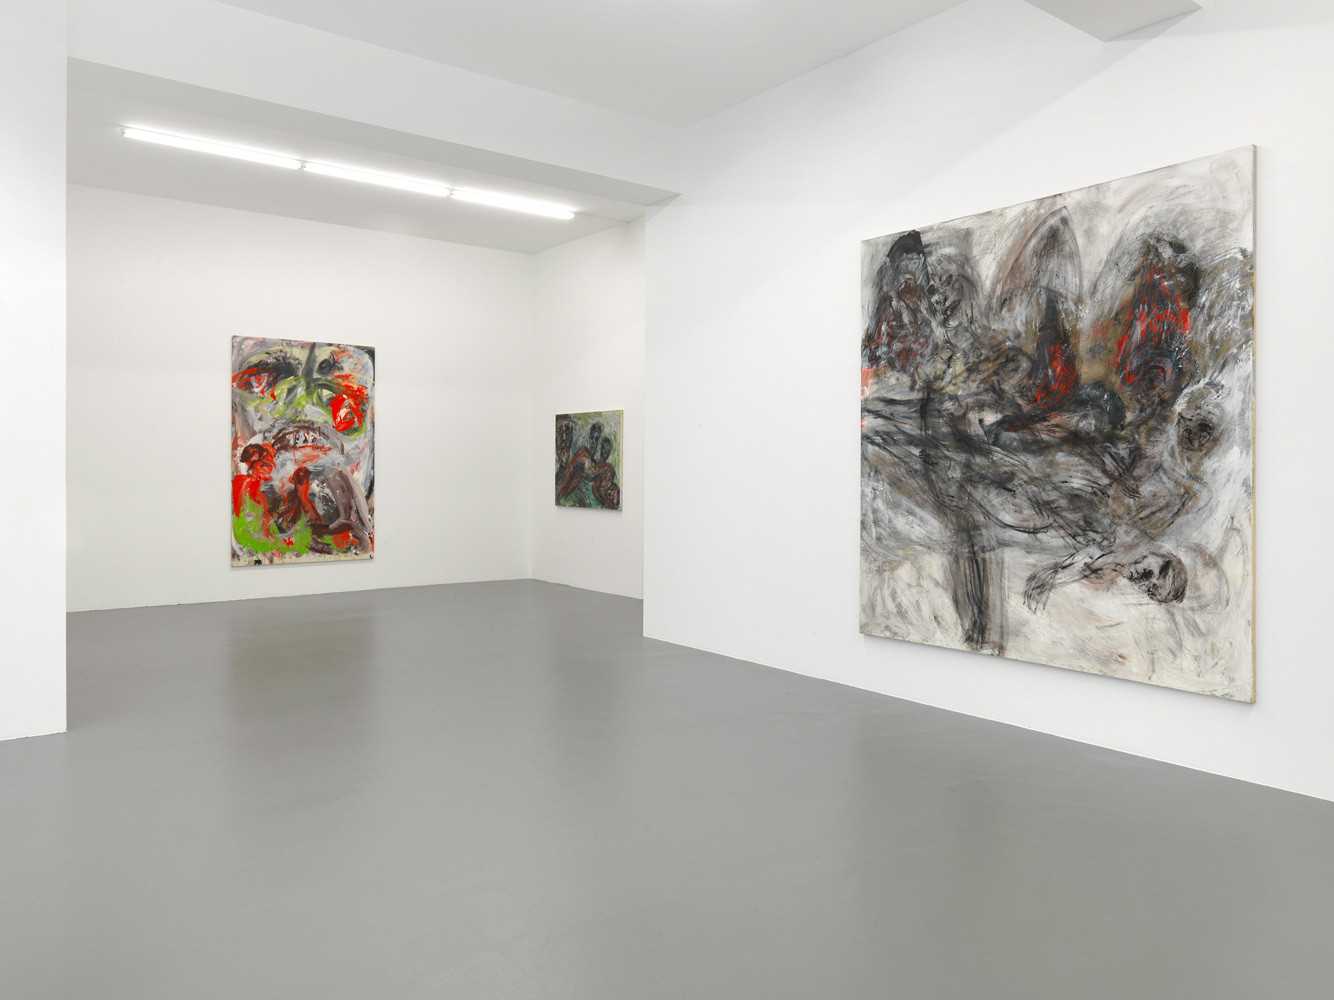 Martin Disler, ‘Malerei’, Installation view, Buchmann Galerie, 2014